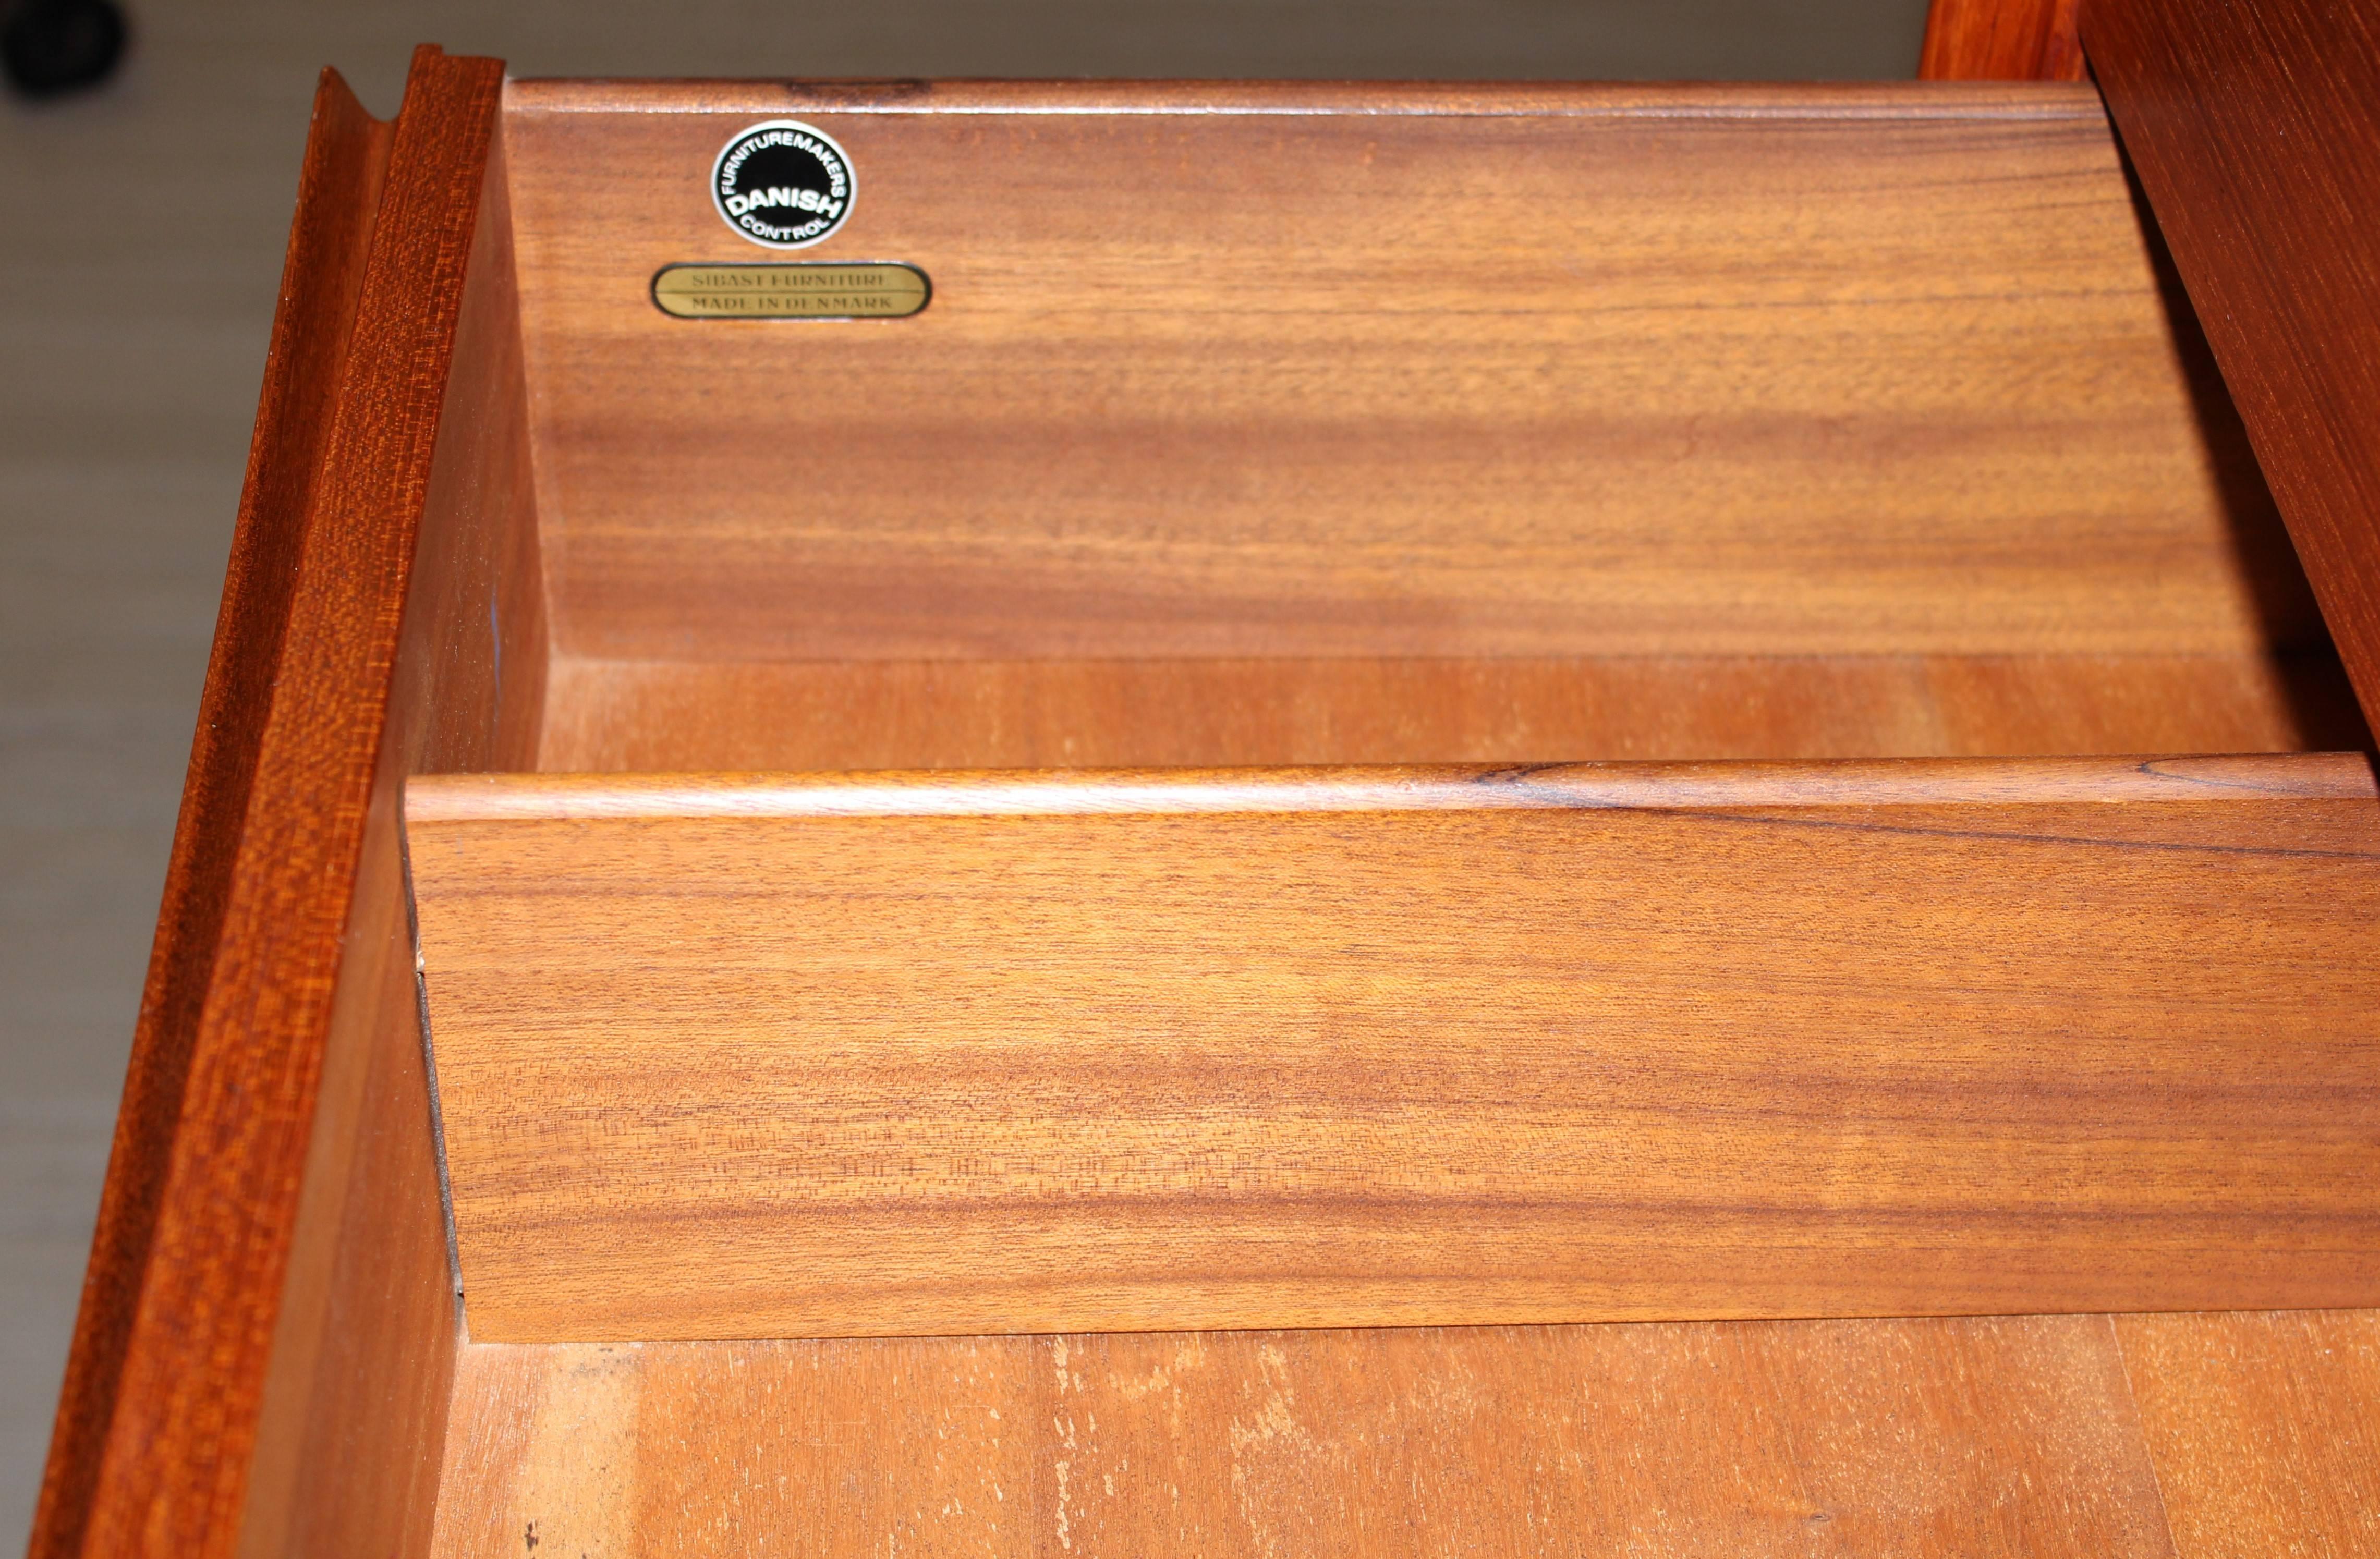 arne vodder chest of drawers